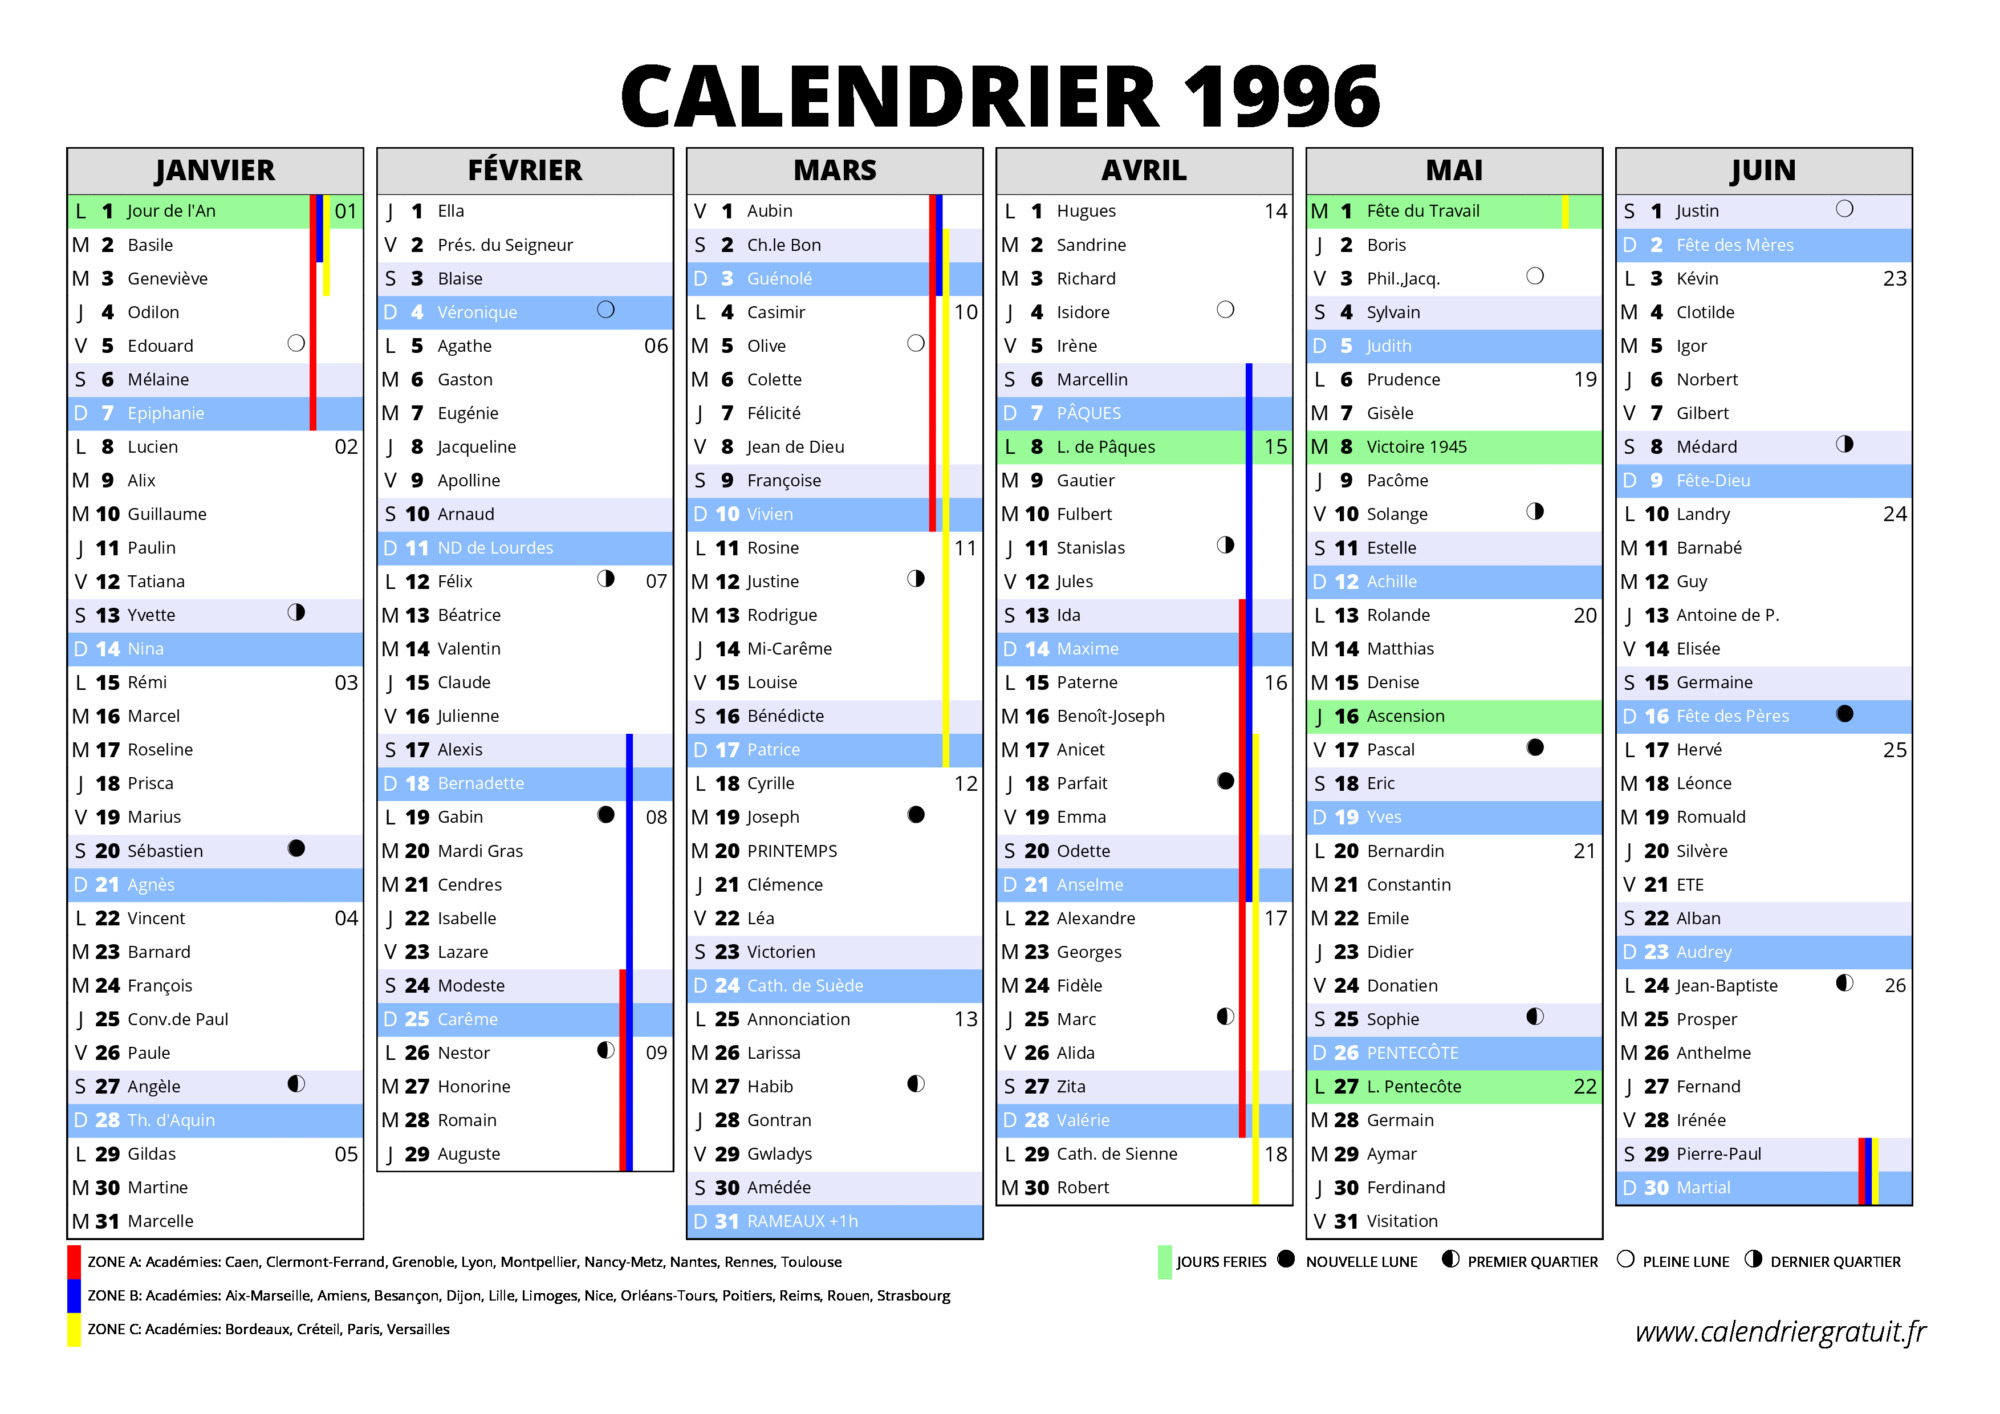 Pourquoi internet s'arrache les calendriers de 1996 à des prix exorbitants  ? - La Libre